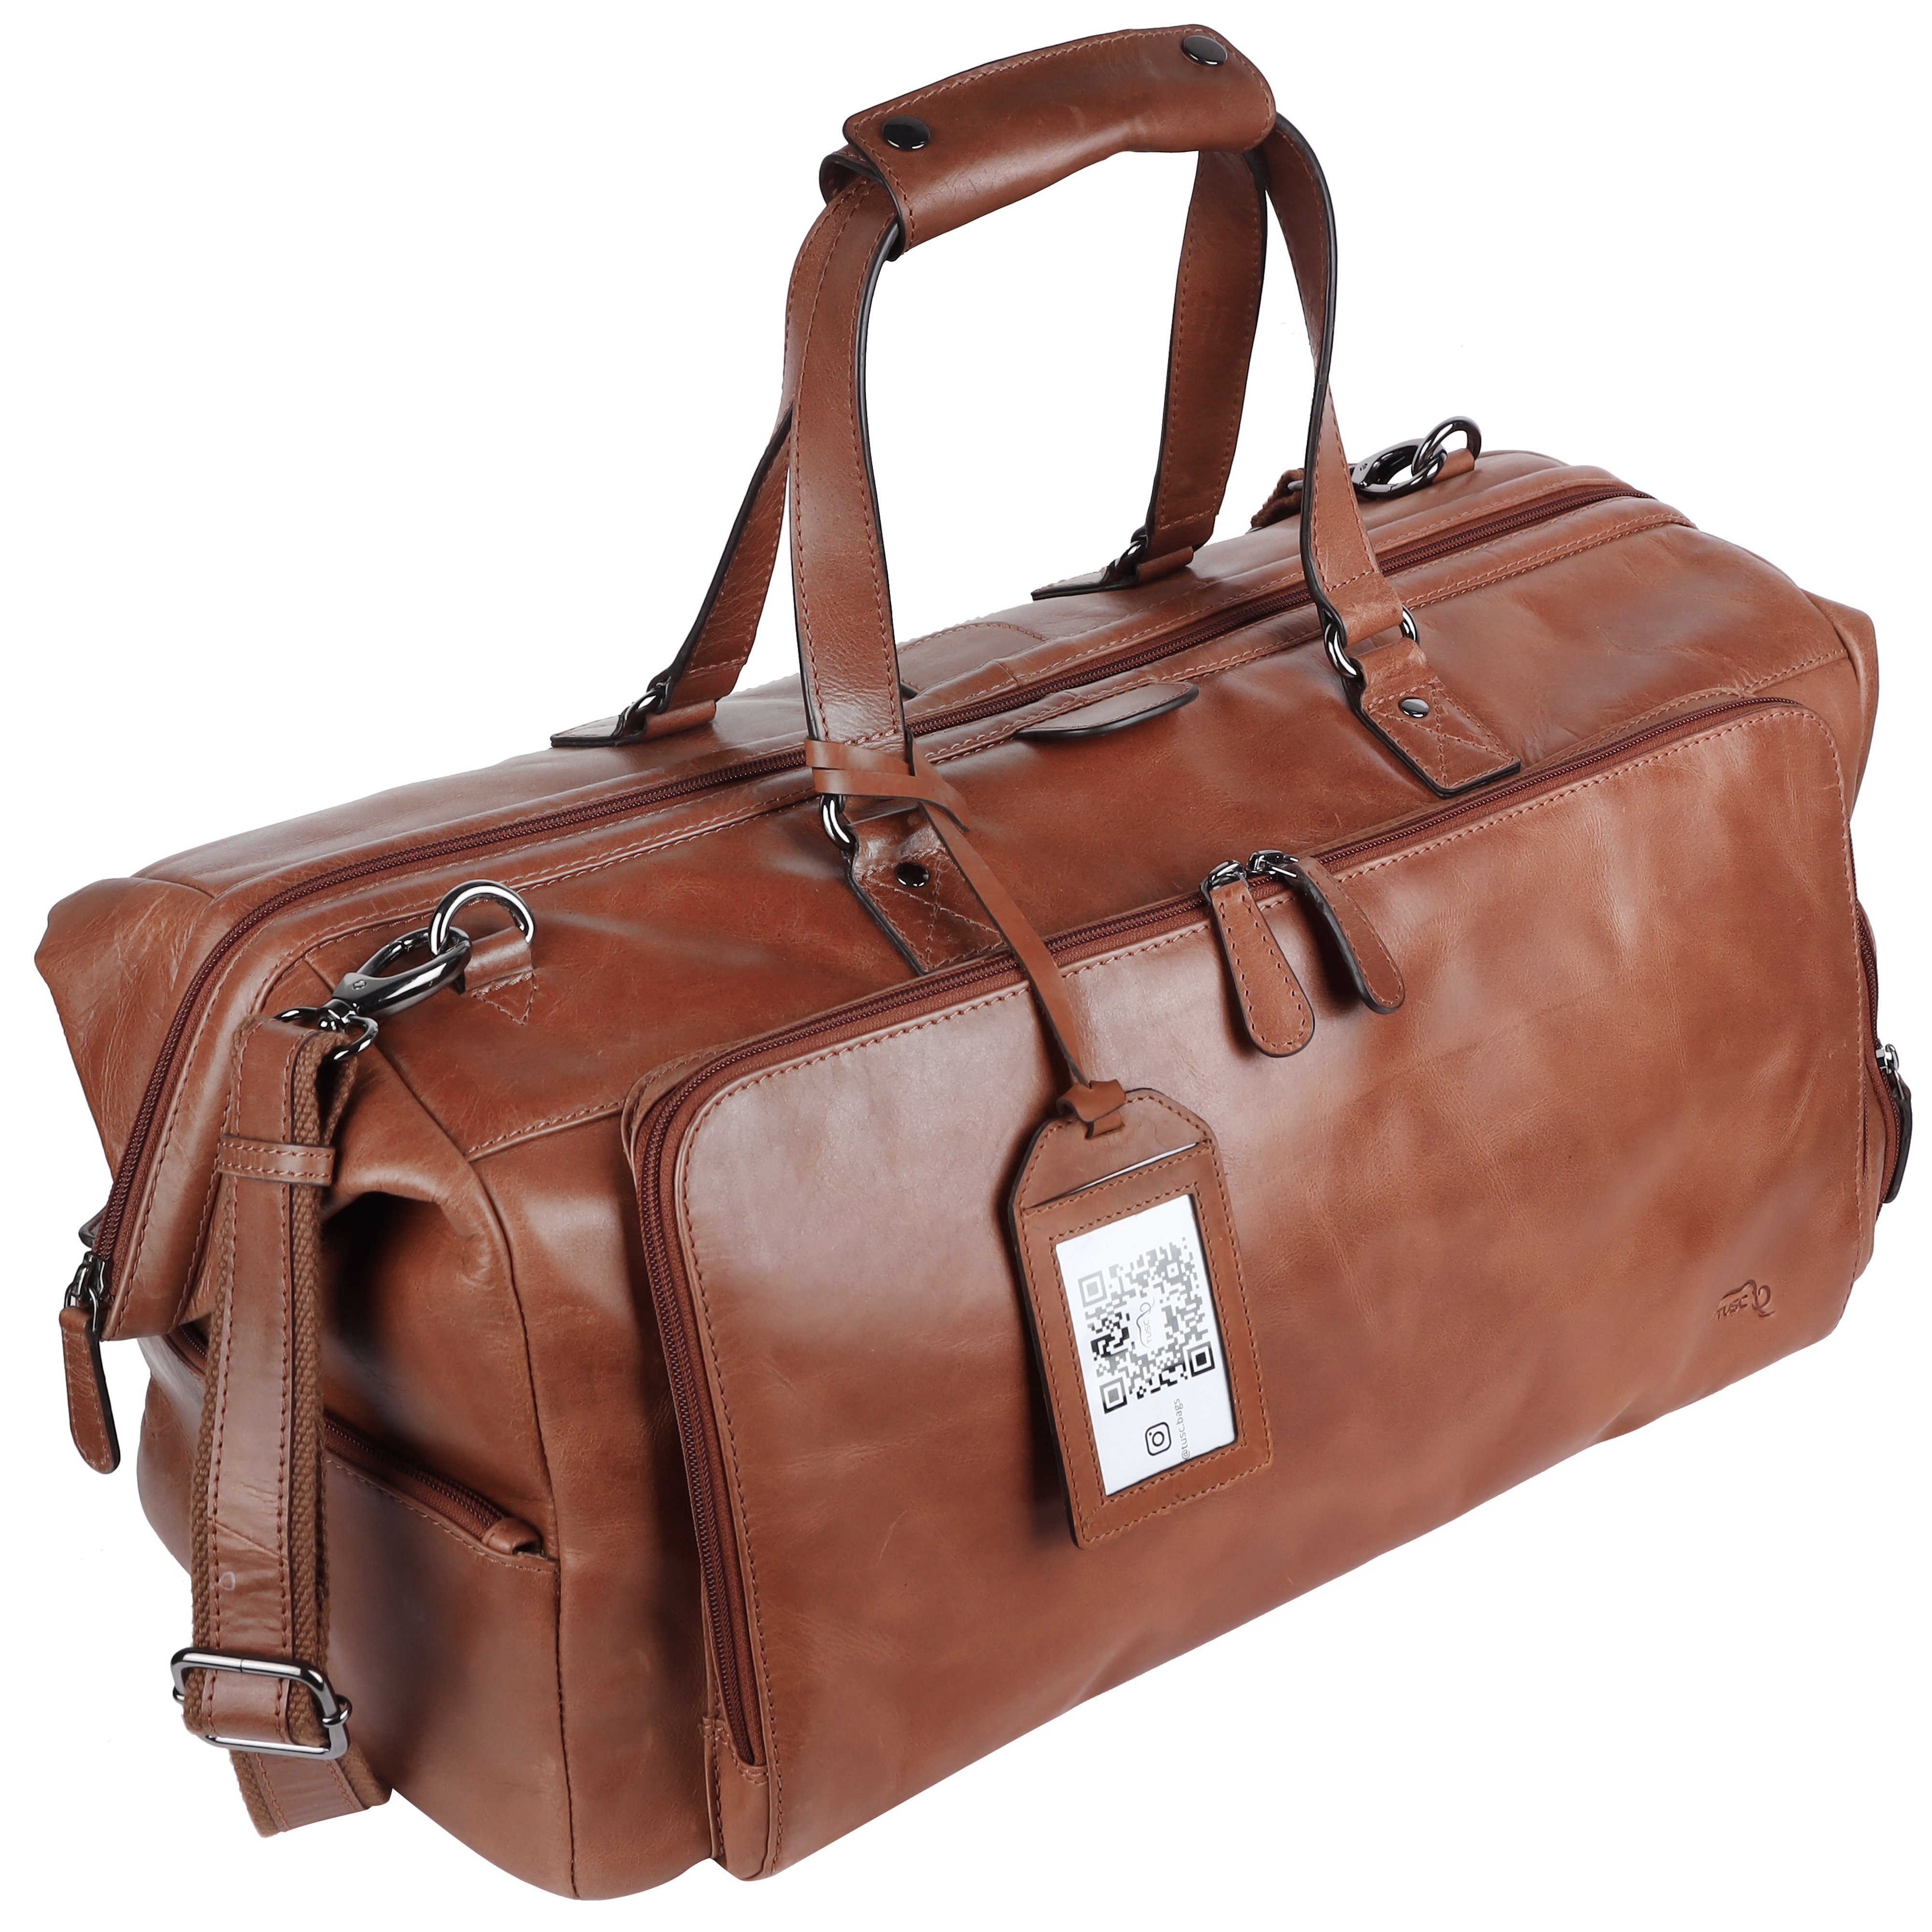 TUSC Reisetasche Tarvos, Premium Reisetasche aus Leder mit Laptopfach | Reisetaschen